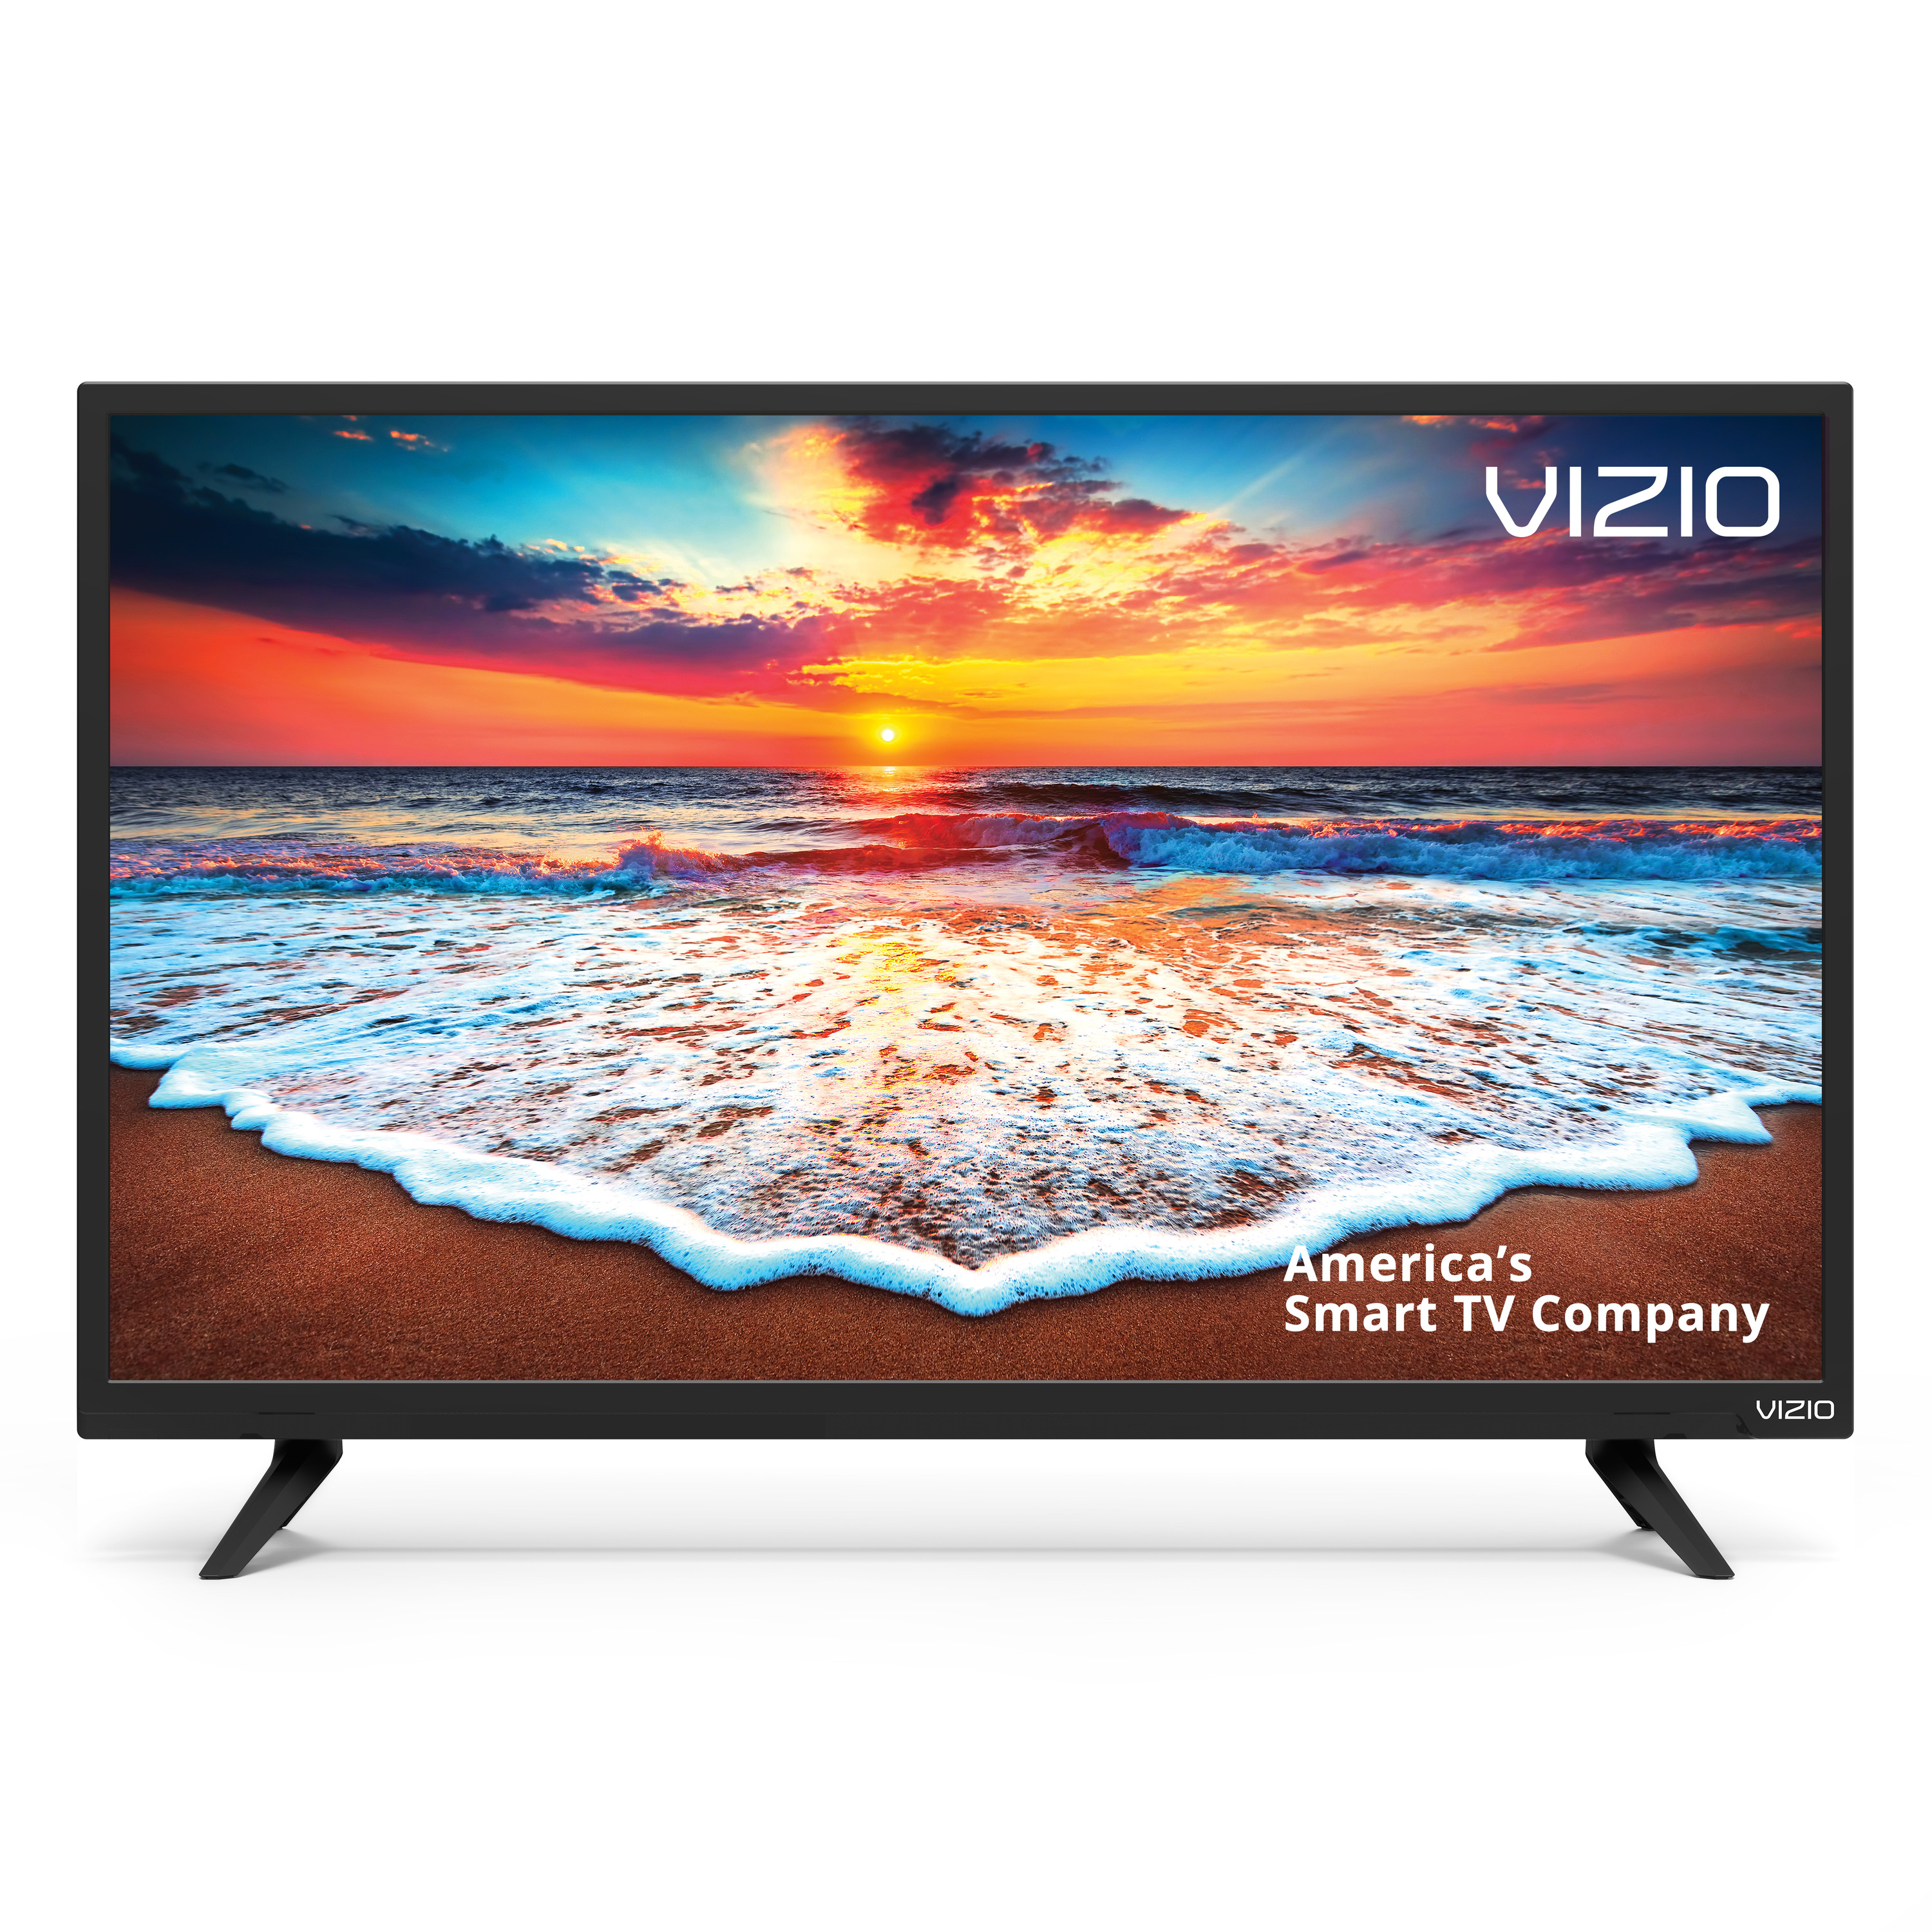 VIZIO 43" Class FHD LED Smart TV D-Series D43fx-F4 - image 3 of 13